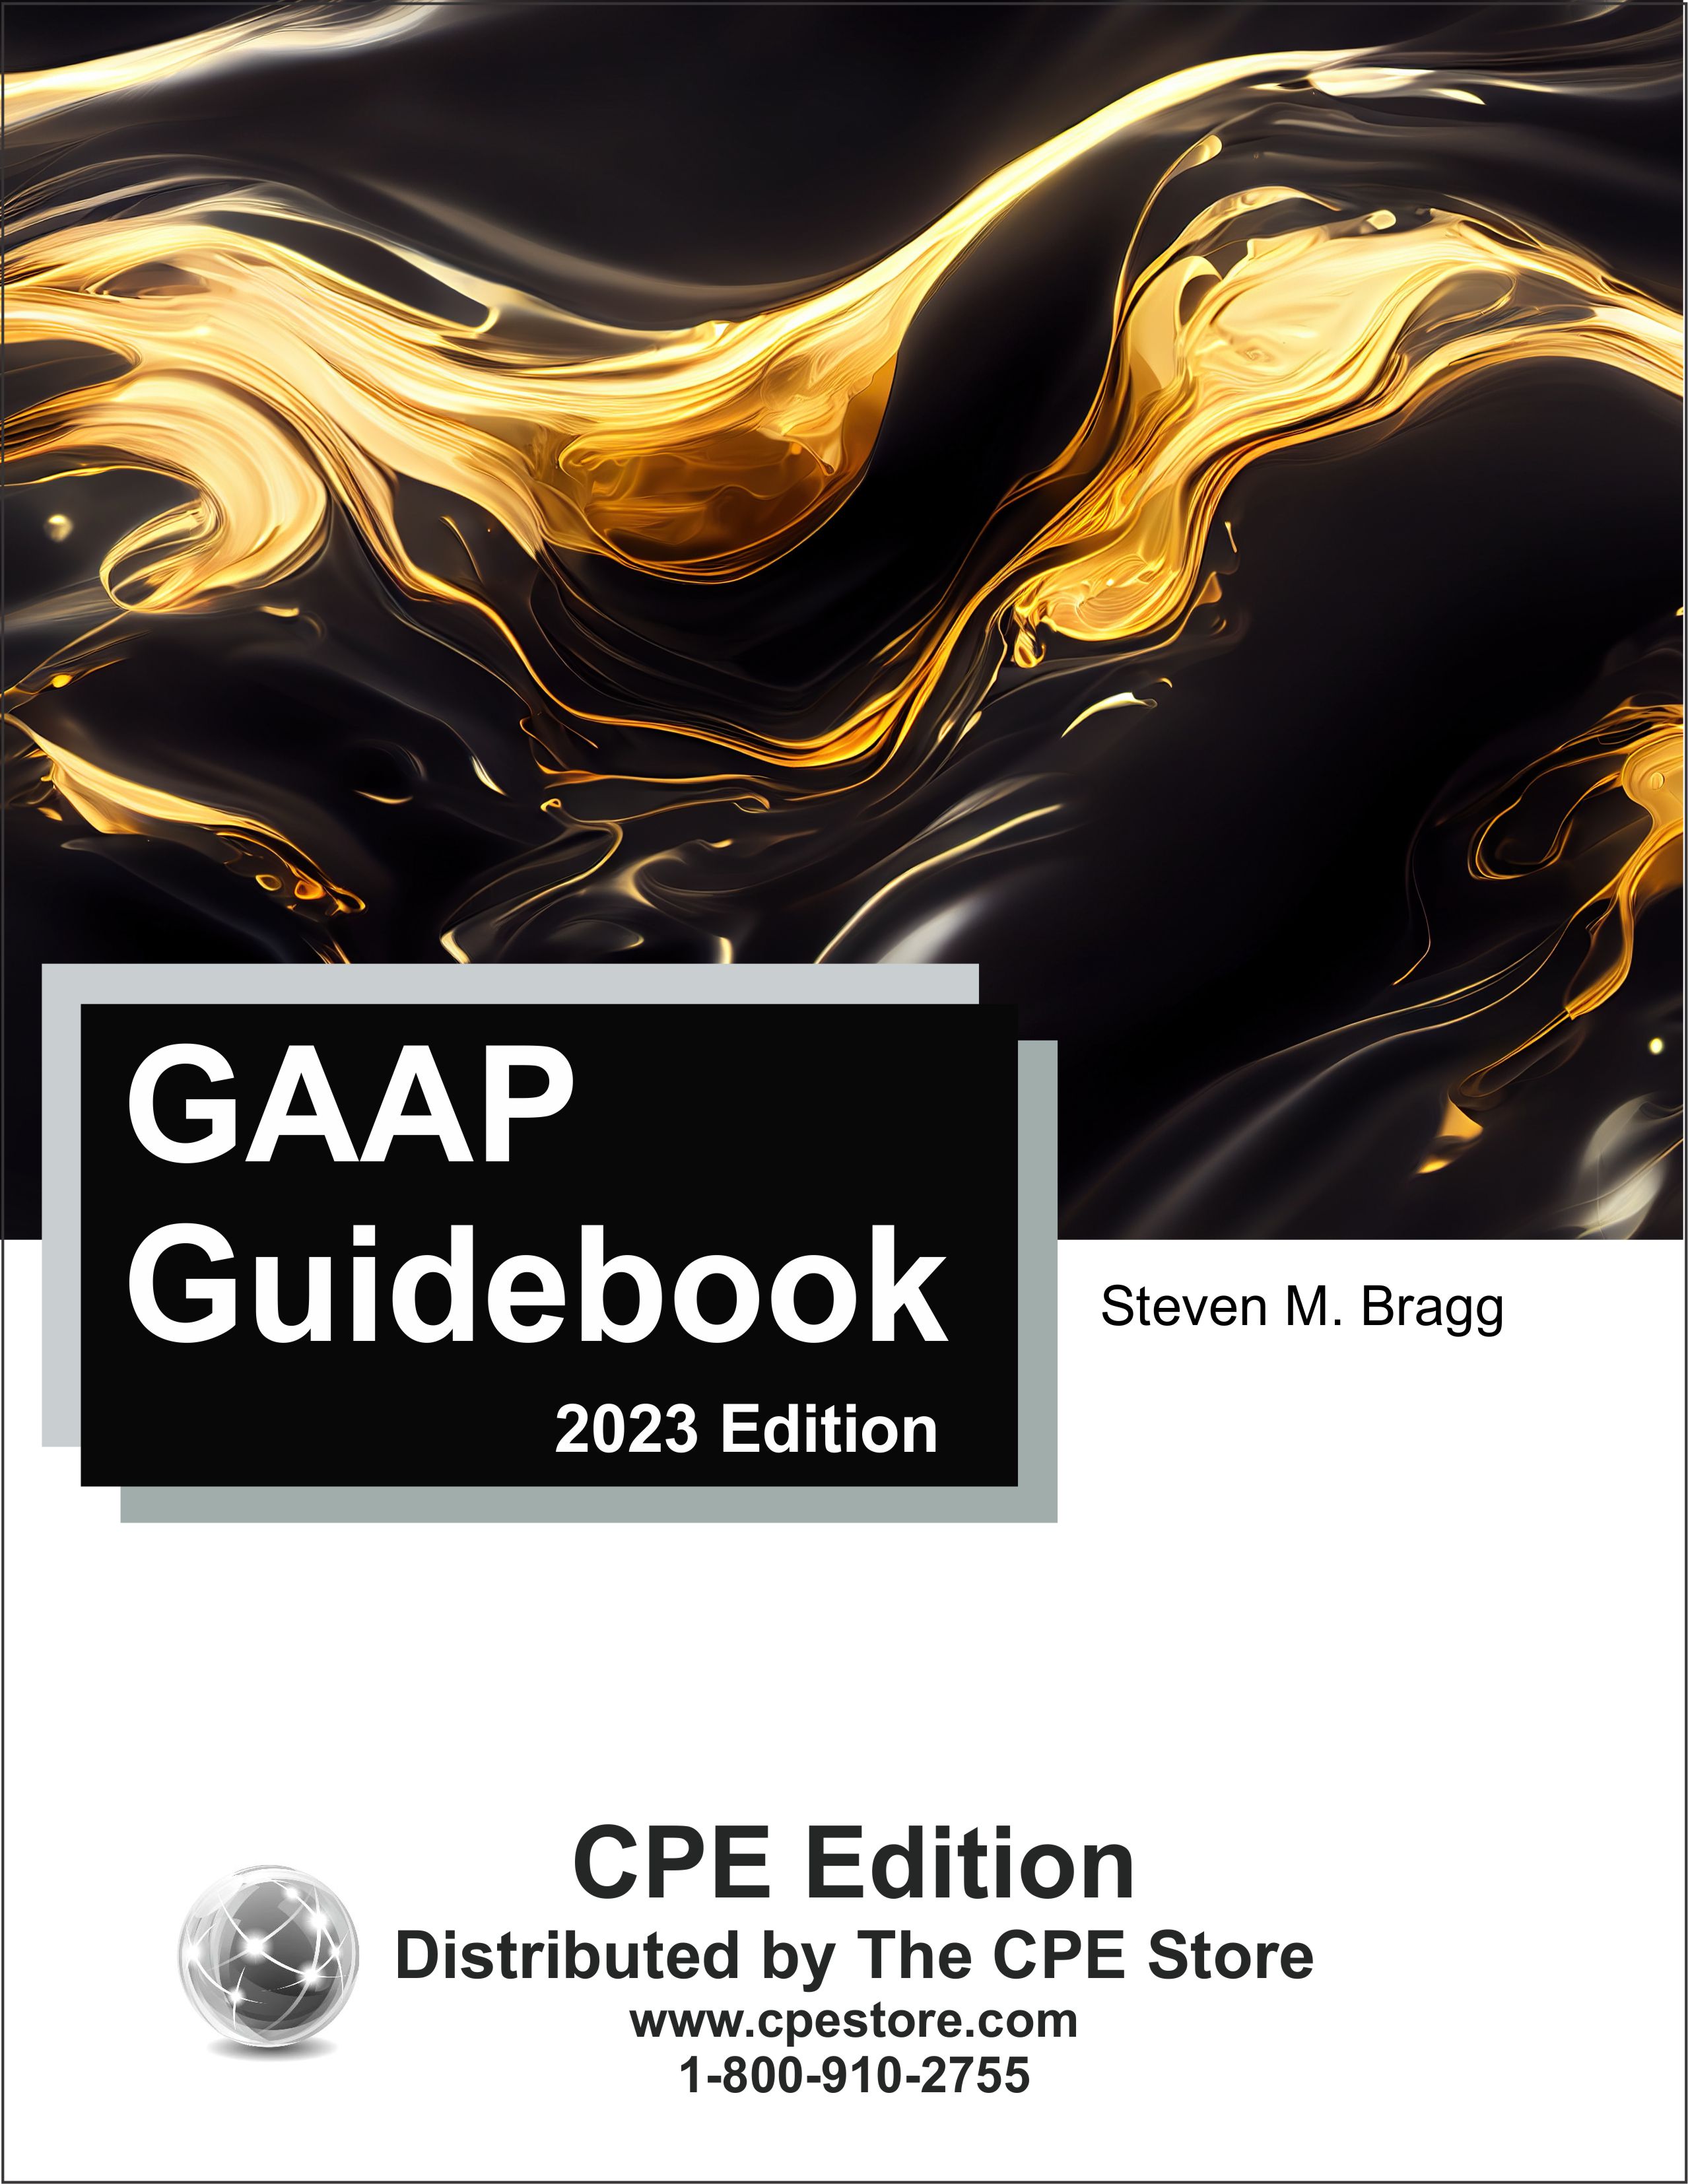 GAAP Guidebook 2023